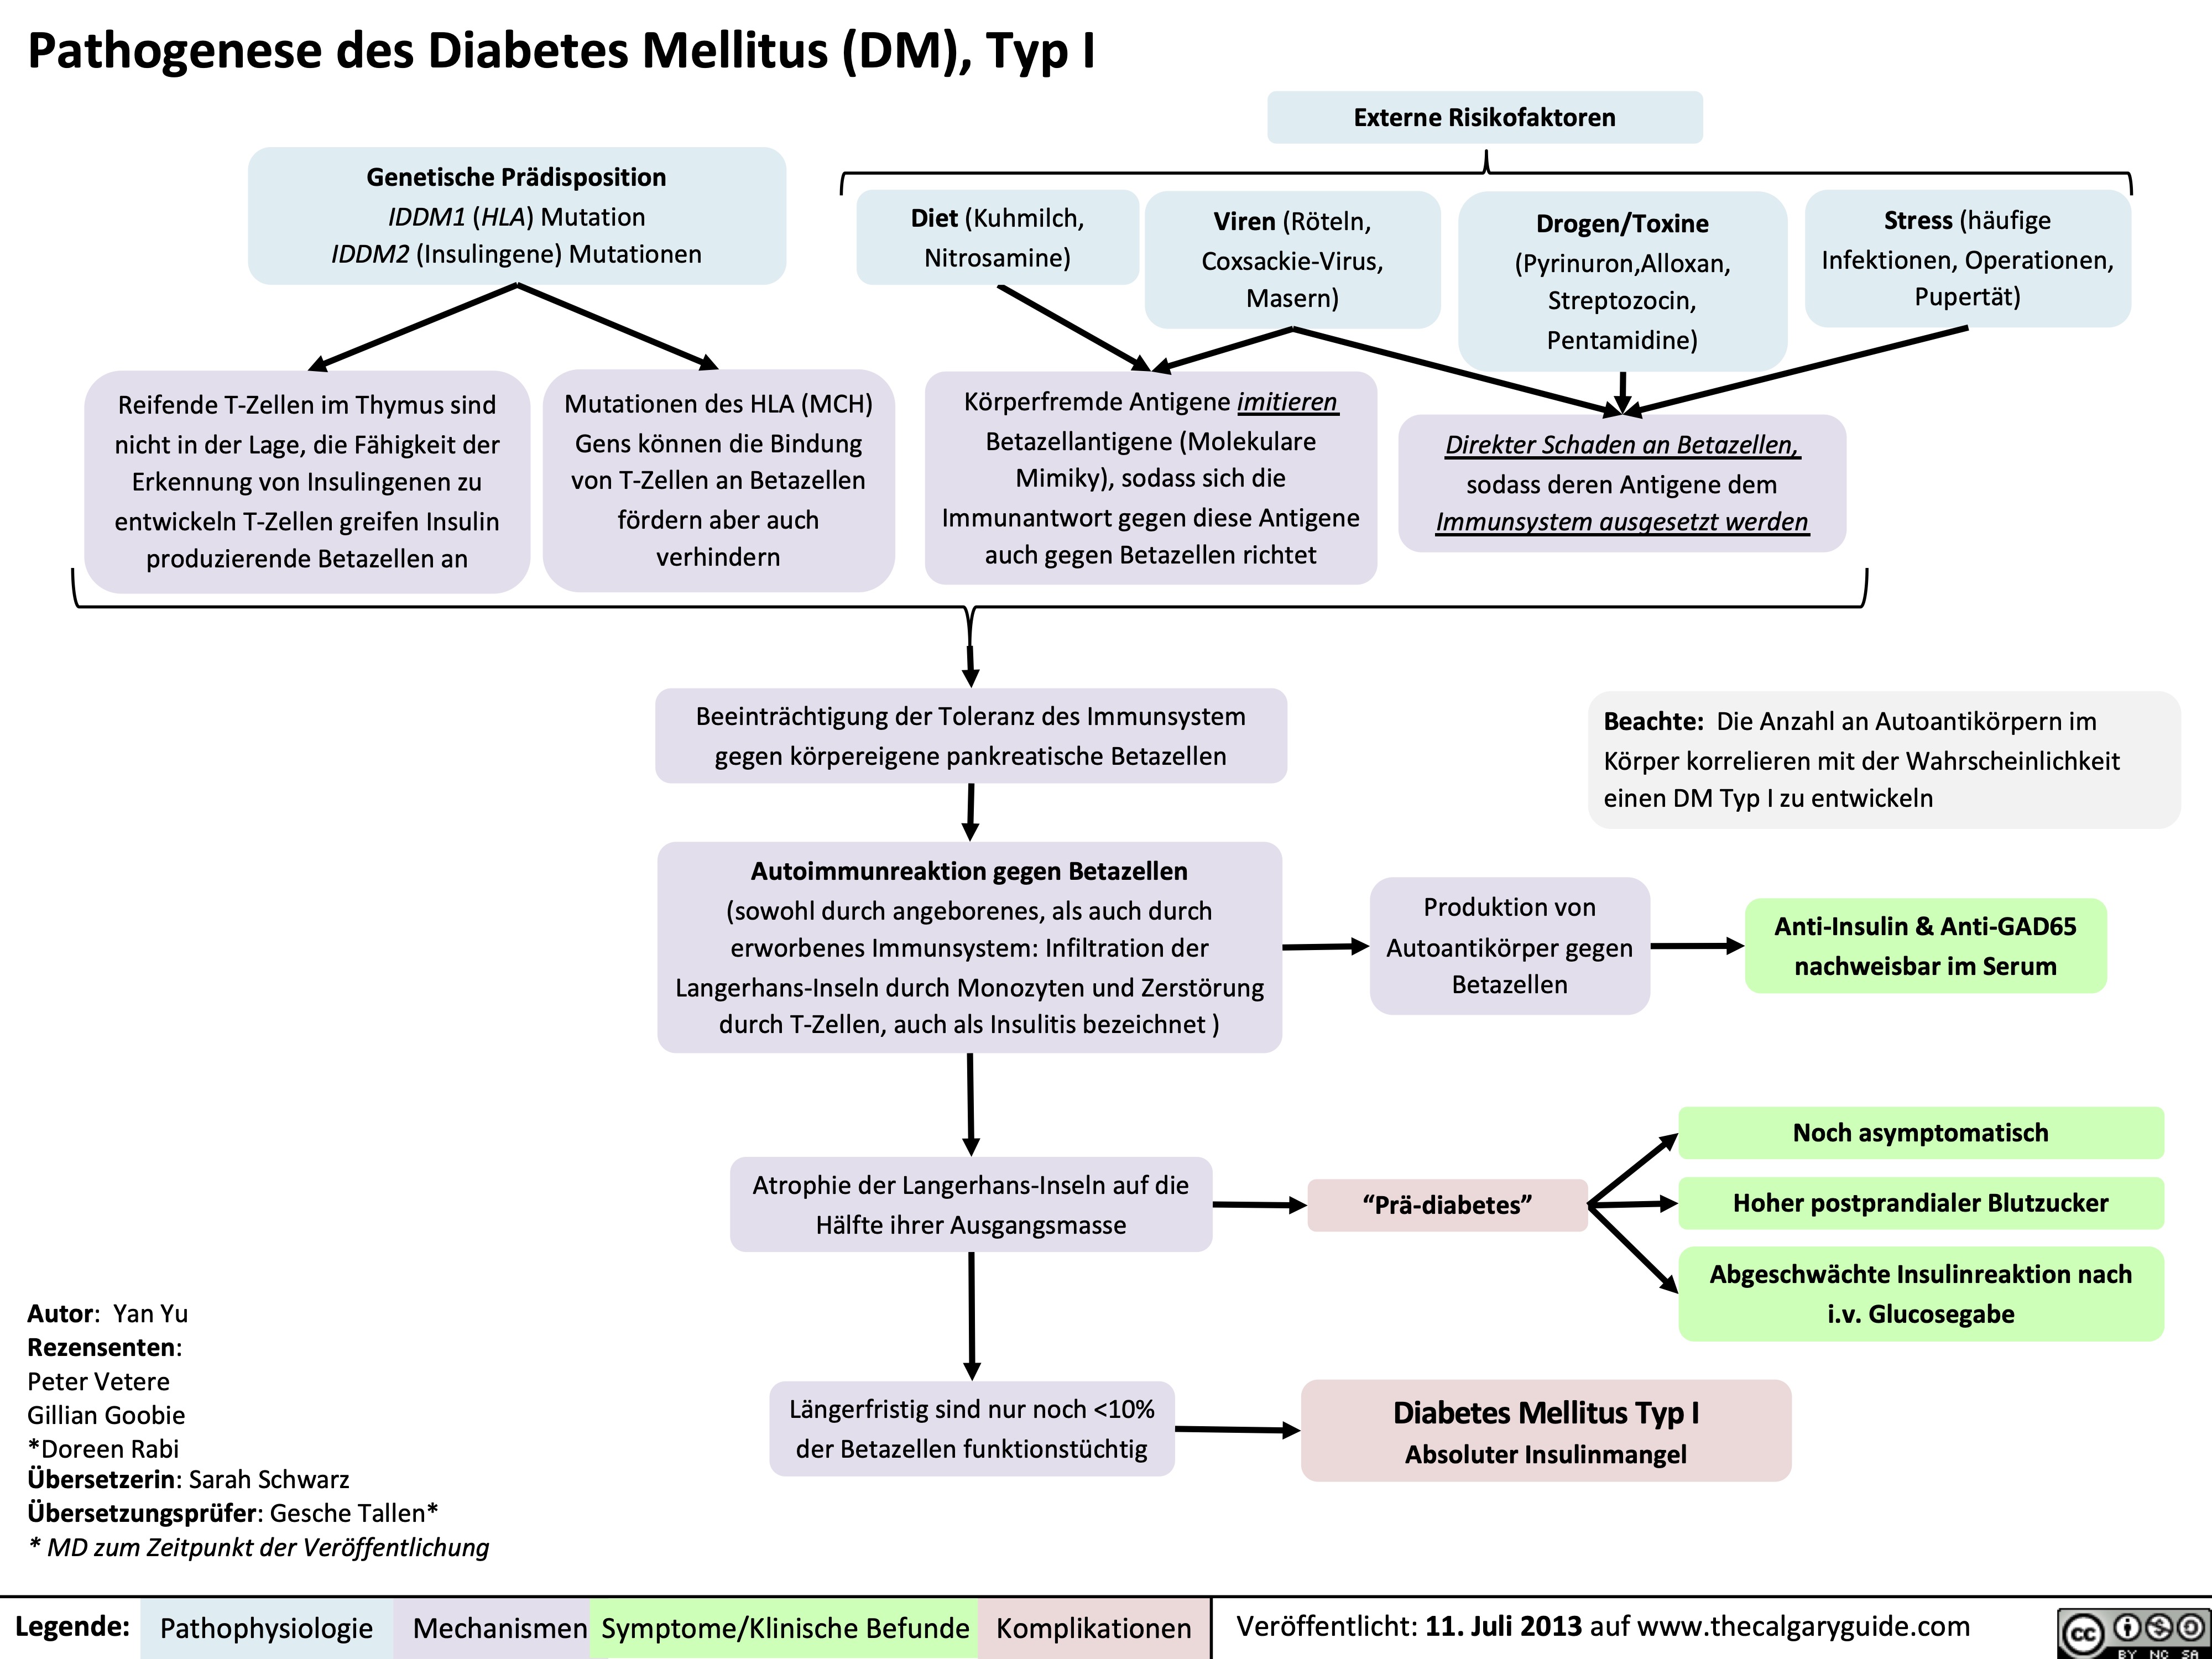 Pathogenese des Diabetes Mellitus (DM), Typ I
 Genetische Prädisposition
IDDM1 (HLA) Mutation IDDM2 (Insulingene) Mutationen
Diet (Kuhmilch, Nitrosamine)
Viren (Röteln, Coxsackie-Virus, Masern)
Drogen/Toxine
(Pyrinuron,Alloxan, Streptozocin, Pentamidine)
Direkter Schaden an Betazellen,
sodass deren Antigene dem
Immunsystem ausgesetzt werden
Stress (häufige Infektionen, Operationen, Pupertät)
Externe Risikofaktoren
             Reifende T-Zellen im Thymus sind nicht in der Lage, die Fähigkeit der Erkennung von Insulingenen zu entwickeln T-Zellen greifen Insulin produzierende Betazellen an
Mutationen des HLA (MCH) Gens können die Bindung von T-Zellen an Betazellen fördern aber auch verhindern
Körperfremde Antigene imitieren Betazellantigene (Molekulare Mimiky), sodass sich die Immunantwort gegen diese Antigene auch gegen Betazellen richtet
      Beeinträchtigung der Toleranz des Immunsystem gegen körpereigene pankreatische Betazellen
Autoimmunreaktion gegen Betazellen
(sowohl durch angeborenes, als auch durch erworbenes Immunsystem: Infiltration der Langerhans-Inseln durch Monozyten und Zerstörung durch T-Zellen, auch als Insulitis bezeichnet )
Atrophie der Langerhans-Inseln auf die Hälfte ihrer Ausgangsmasse
Längerfristig sind nur noch <10% der Betazellen funktionstüchtig
Beachte: Die Anzahl an Autoantikörpern im Körper korrelieren mit der Wahrscheinlichkeit einen DM Typ I zu entwickeln
           Autor: Yan Yu
Rezensenten:
Peter Vetere
Gillian Goobie
*Doreen Rabi
Übersetzerin: Sarah Schwarz Übersetzungsprüfer: Gesche Tallen*
* MD zum Zeitpunkt der Veröffentlichung
Produktion von Autoantikörper gegen Betazellen
“Prä-diabetes”
Diabetes Mellitus Typ I Absoluter Insulinmangel
Anti-Insulin & Anti-GAD65 nachweisbar im Serum
Noch asymptomatisch Hoher postprandialer Blutzucker
Abgeschwächte Insulinreaktion nach i.v. Glucosegabe
   
Legende:
Pathophysiologie
Mechanismen
Symptome/Klinische Befunde
Komplikationen
Veröffentlicht: 11. Juli 2013 auf www.thecalgaryguide.com